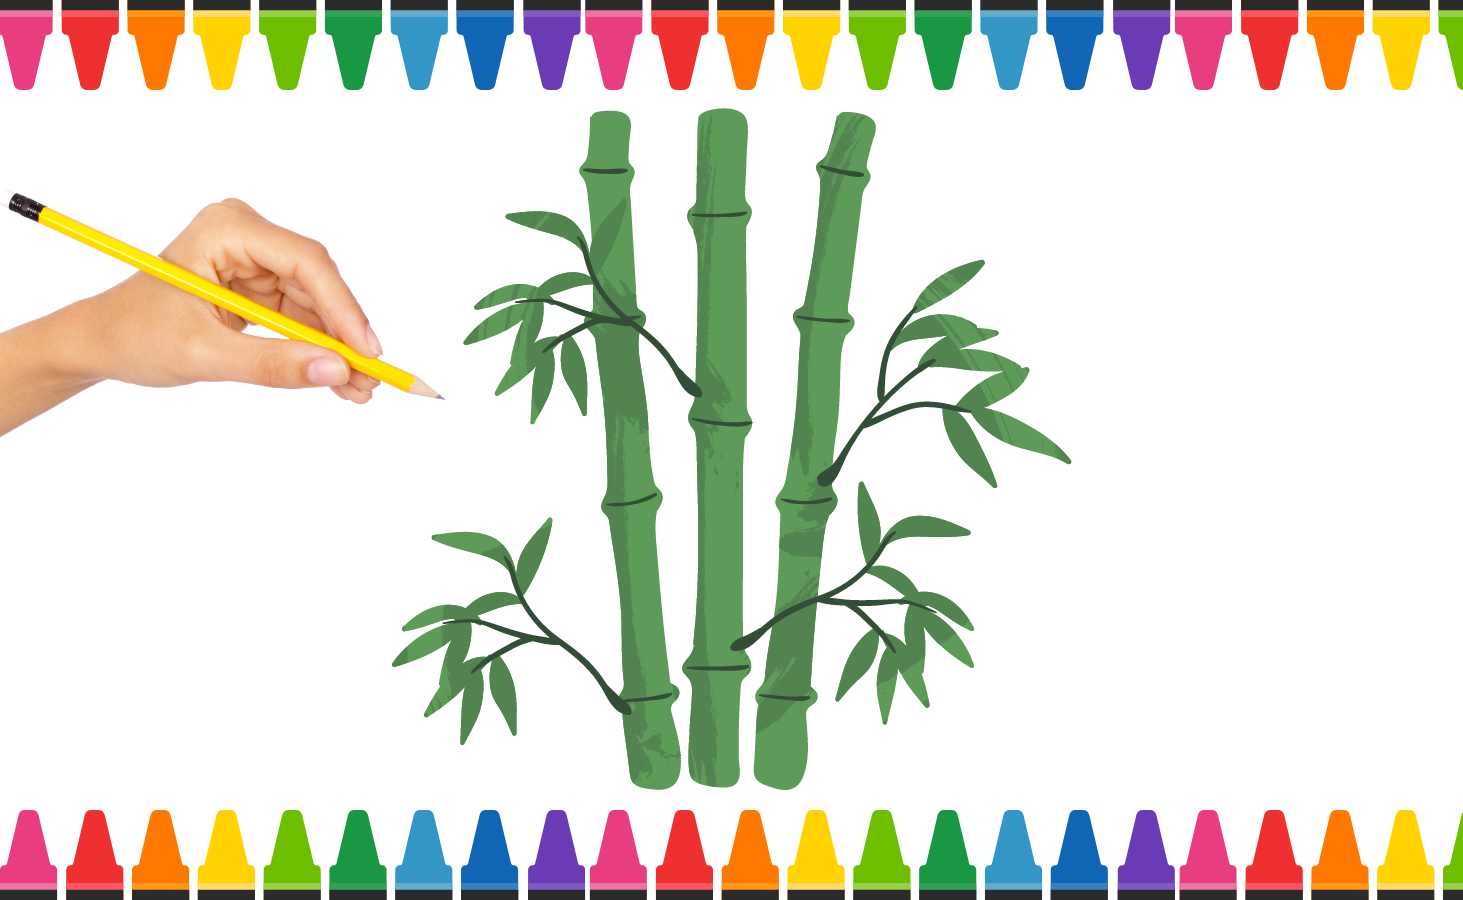 Cách Vẽ Cây Tre đơn giản bằng bút chì 9  How to Draw Bamboo with pencil   Kim Chi Art  Draw  YouTube